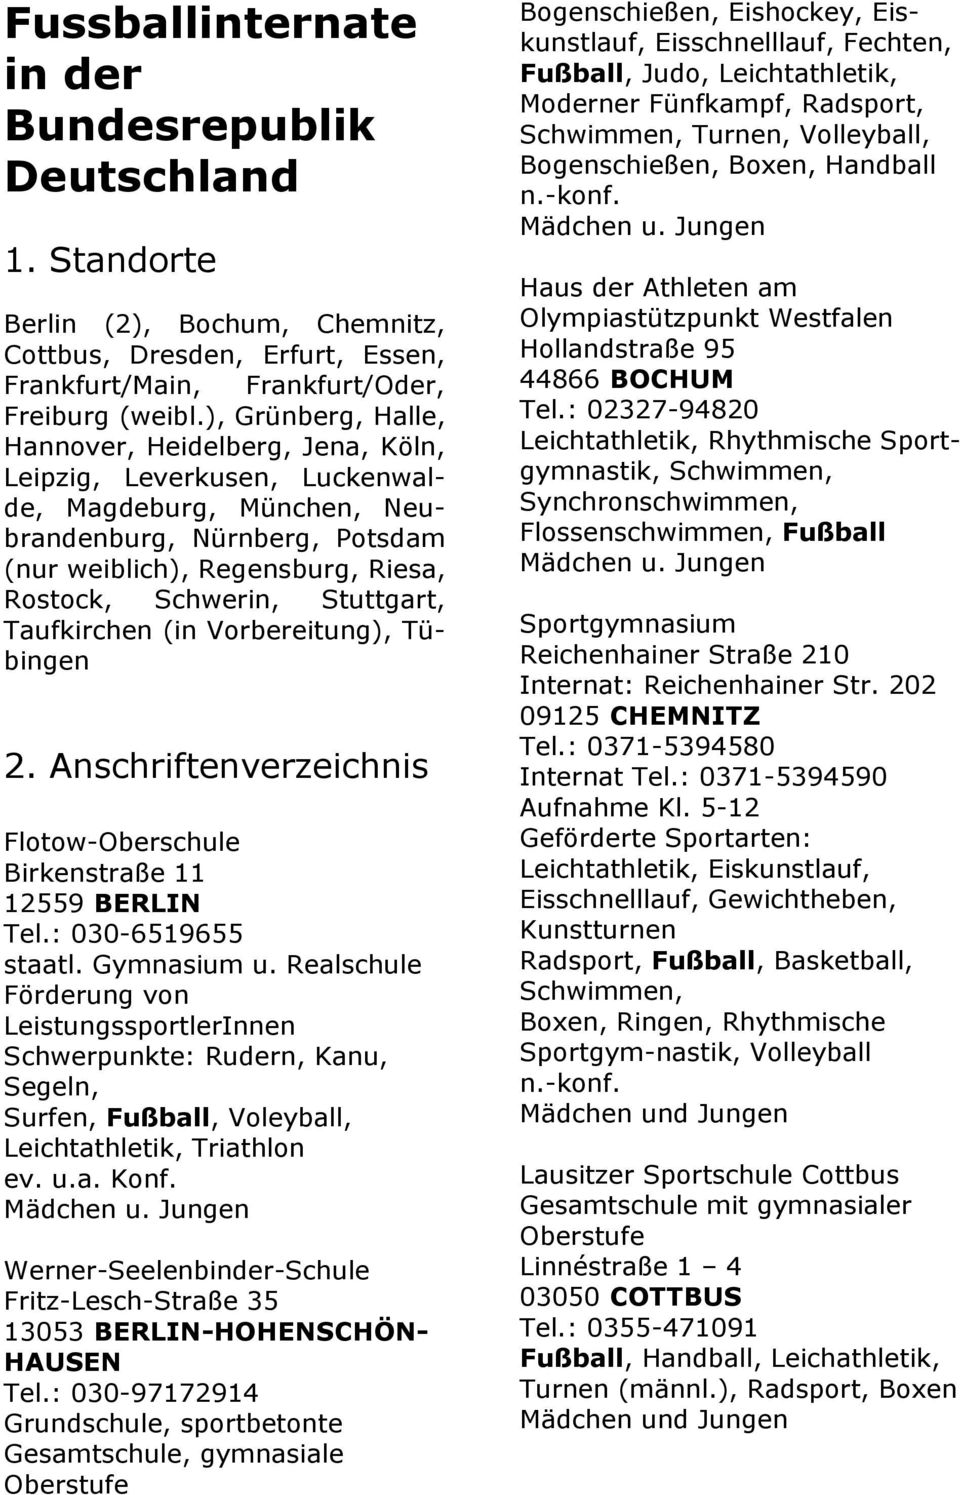 Stuttgart, Taufkirchen (in Vorbereitung), Tübingen 2. Anschriftenverzeichnis Flotow-Oberschule Birkenstraße 11 12559 BERLIN Tel.: 030-6519655 staatl. Gymnasium u.